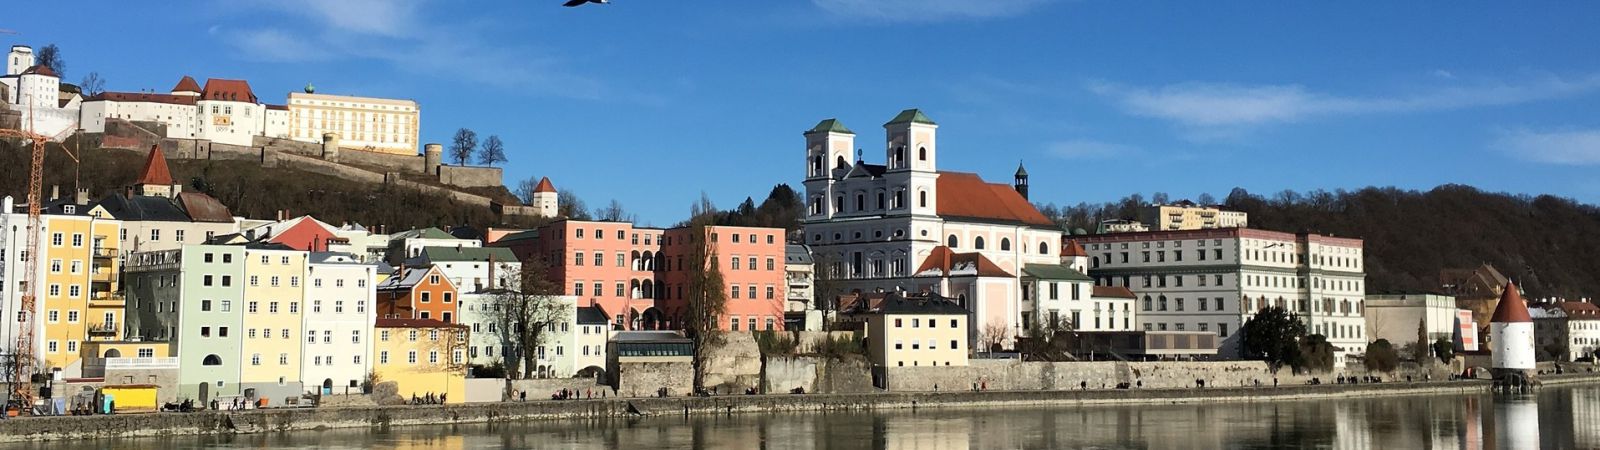 Passau aan de oever